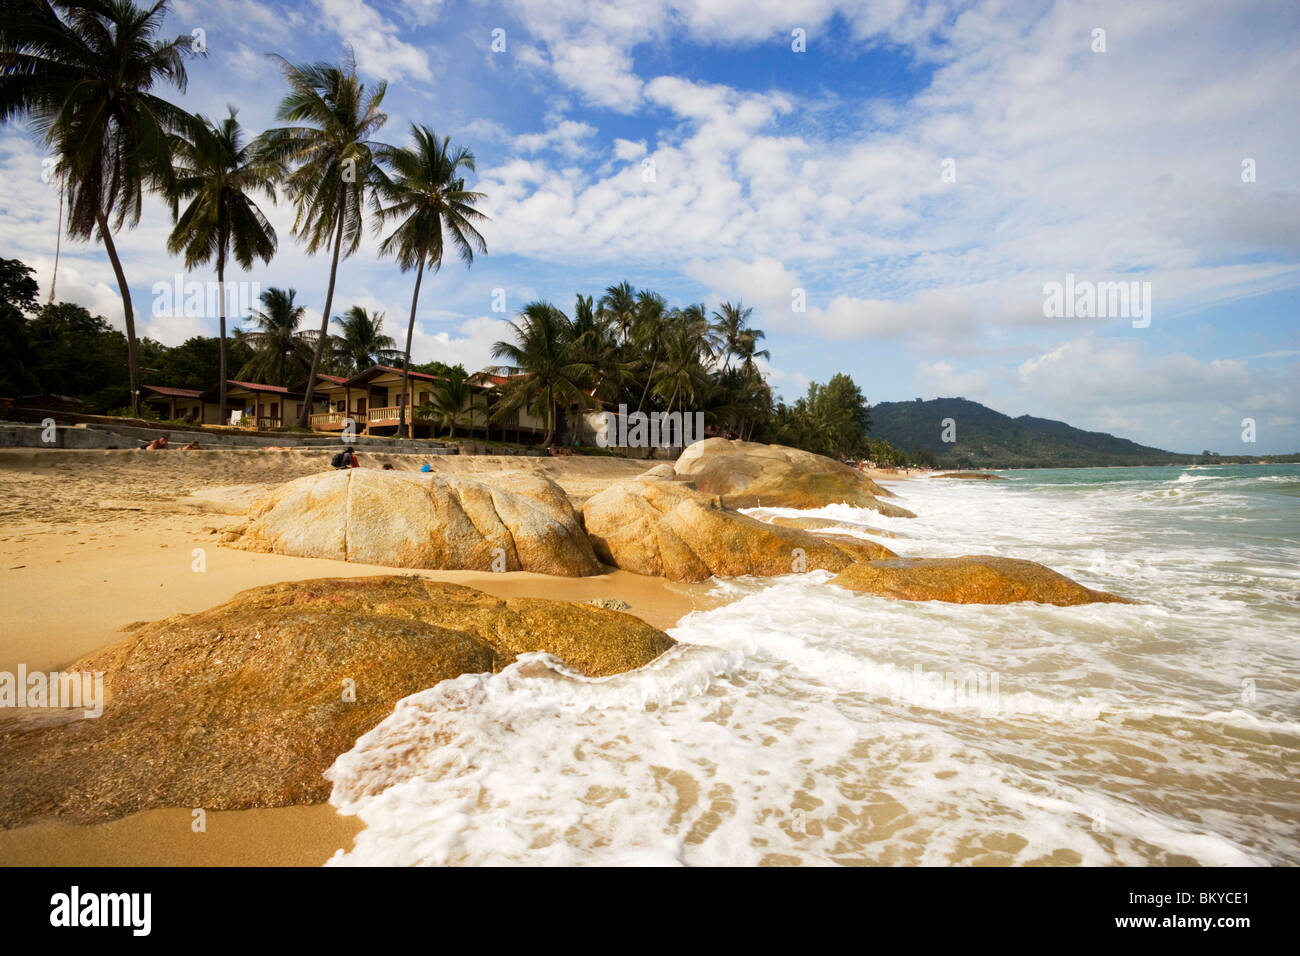 View over Lamai Beach, Hat Lamai, Ao Lamai, Ko Samui, Thailand Stock Photo